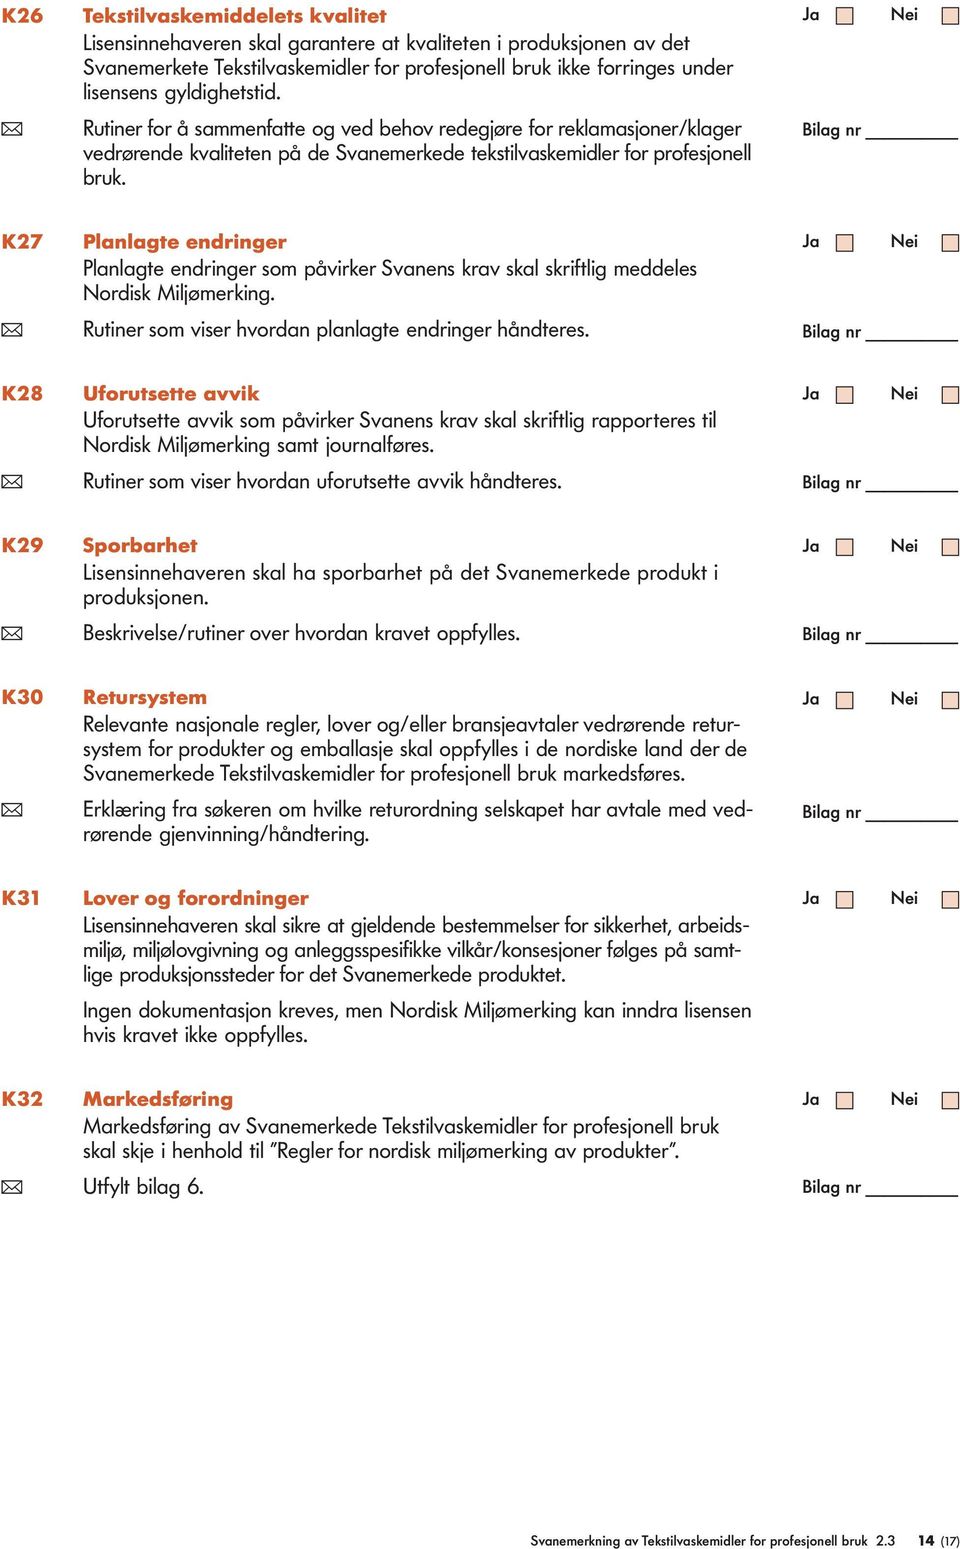 K27 Panagte endringer Panagte endringer som påvirker Svanens krav ska skriftig meddees Nordisk Mijømerking. ( Rutiner som viser hvordan panagte endringer håndteres.